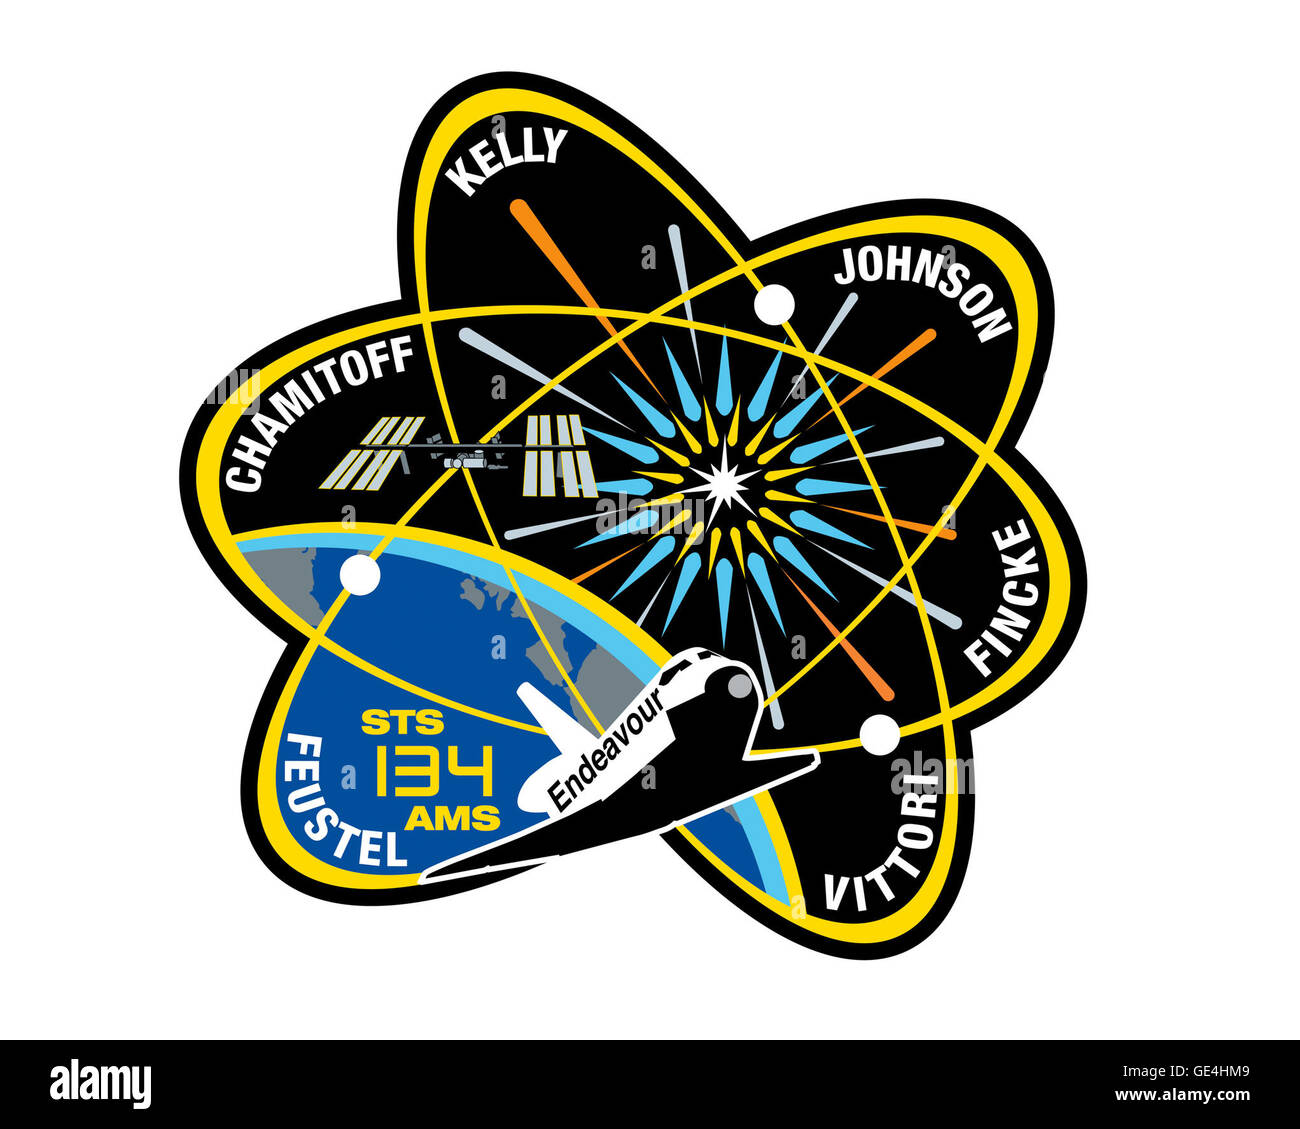 Lancement : le 16 mai 2011, 8:56 AM EDT Landing : juin 1, 2011, 2:34 AM EDT, Kennedy Space Center : la navette spatiale Endeavour Équipage : Le commandant Mark Kelly, Greg pilote H. Johnson, spécialistes de mission Michael Fincke, Roberto Vittori, Andrew Feustel, Greg Chamitoff STS-134 d'Endeavour a été dernière mission. L'objectif de la mission était de livrer le Spectromètre magnétique Alpha-2 (AMS) et de fournitures essentielles dont deux antennes de communication, un réservoir de gaz à haute pression, et de pièces supplémentaires pour le robot Dextre. www.nasa.gov/mission pages/shuttle/shuttlemissions/sts134... ( Http://www.nasa.gov/mission pages Banque D'Images